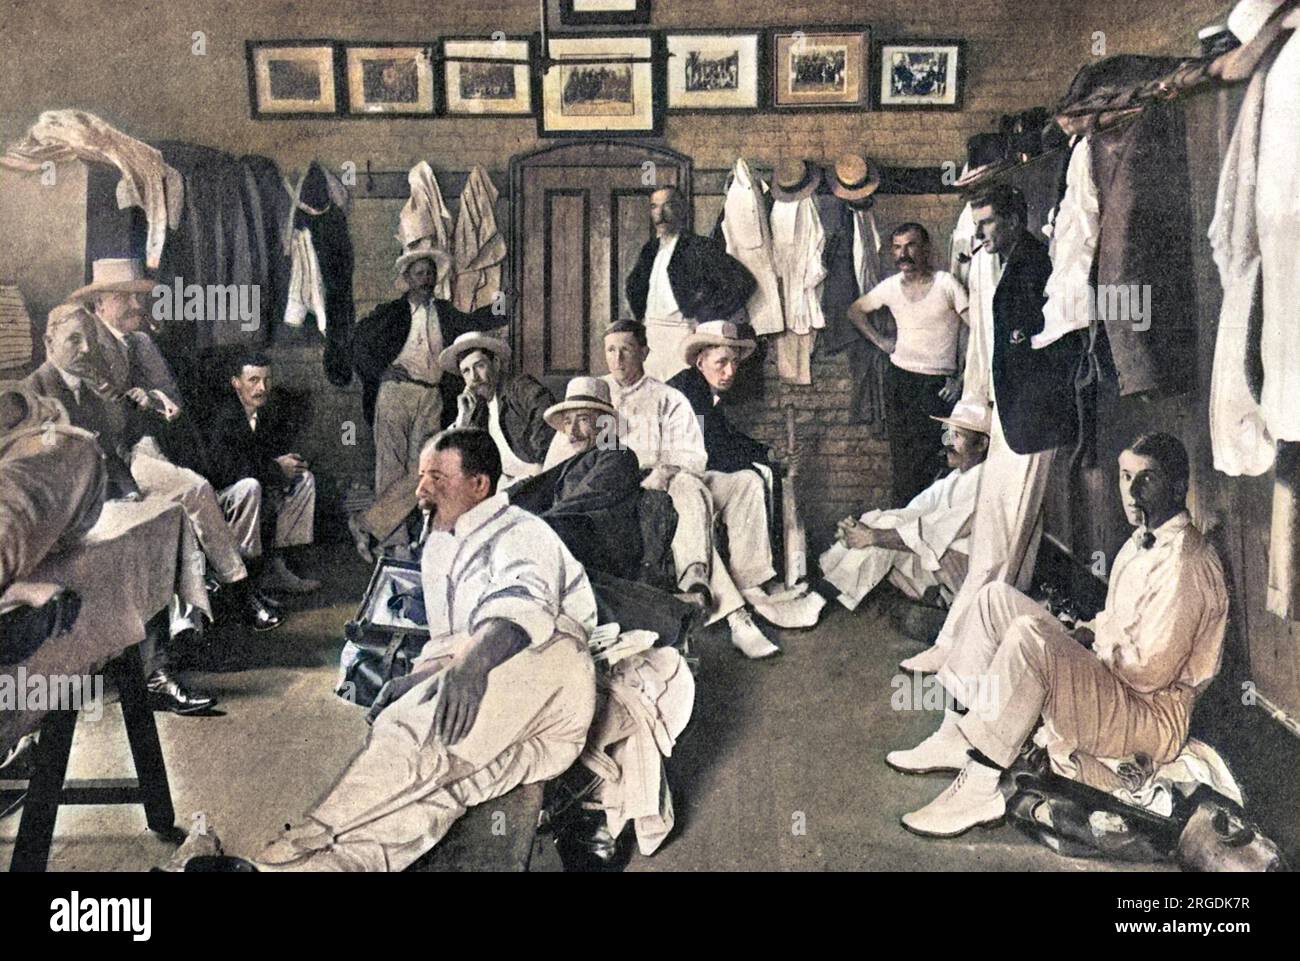 Die Australier Elf in ihrer Garderobe auf dem Melbourne Cricket Ground. In der rechten Ecke des Bildes ist C. Hill, der eine Pfeife raucht. Weitere Spieler sind M. A. Noble, W.P. Howell, R.A. Duff, C. McLeod, S.Gregory, J.J. Kelly und W.W. Armstrong. Stockfoto